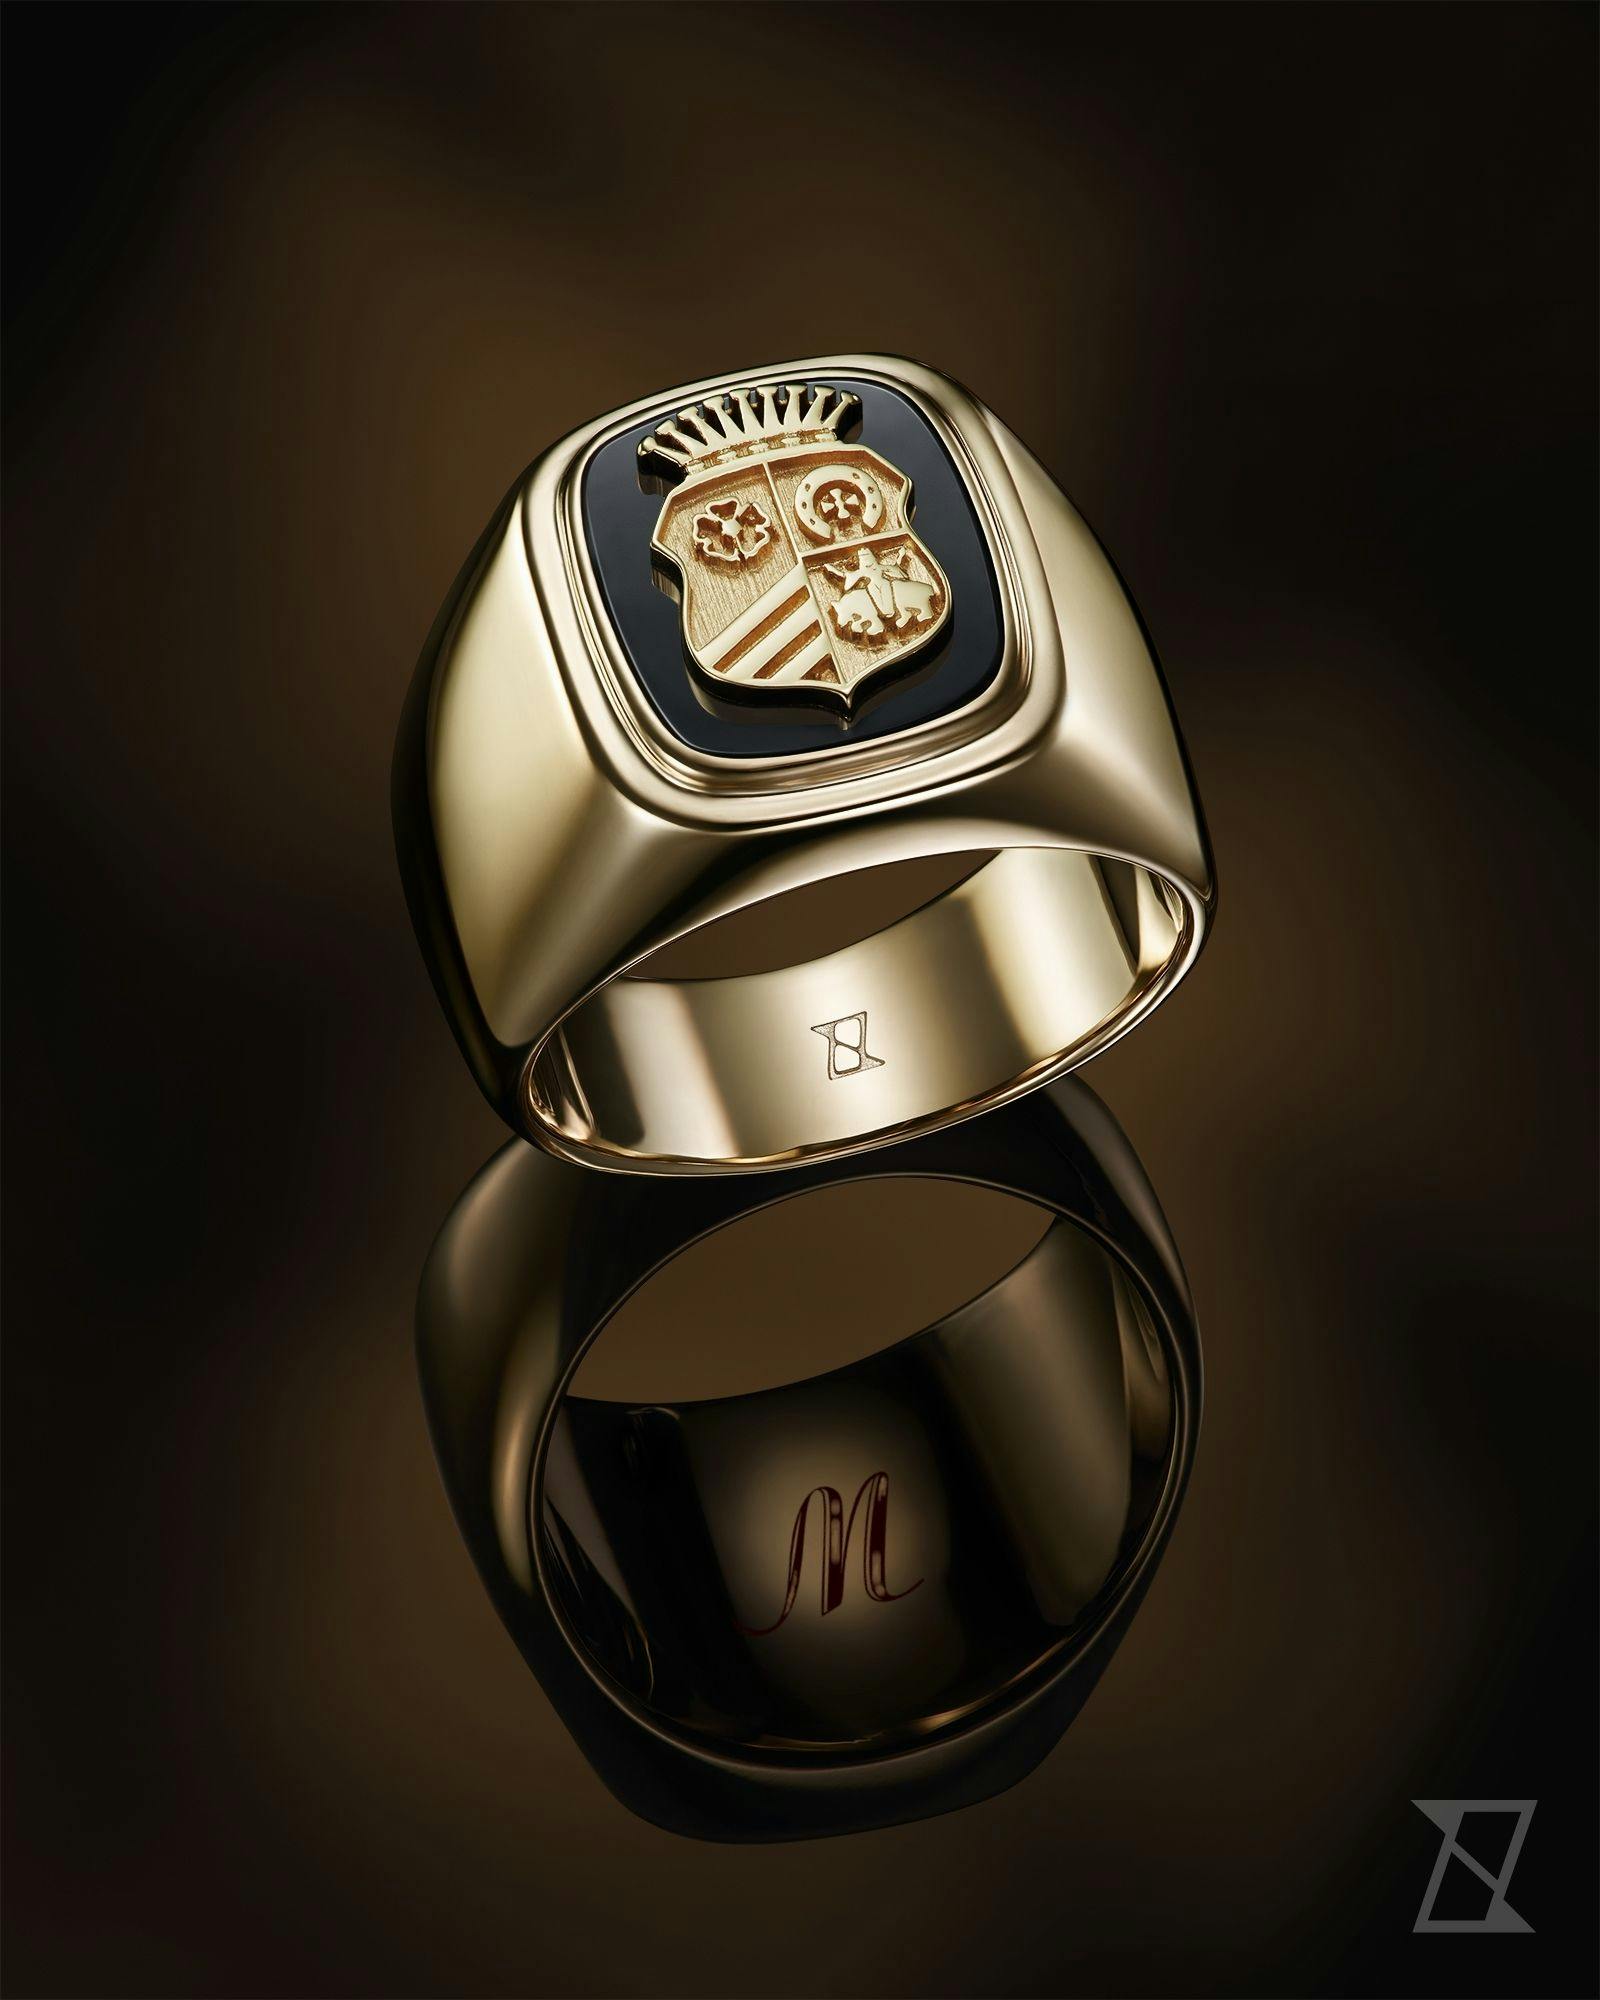 Sygnet na zamówienie z herbem rodowym i gładkimi bokami skrywa inicjał wygrawerowany wewnątrz pierścienia.